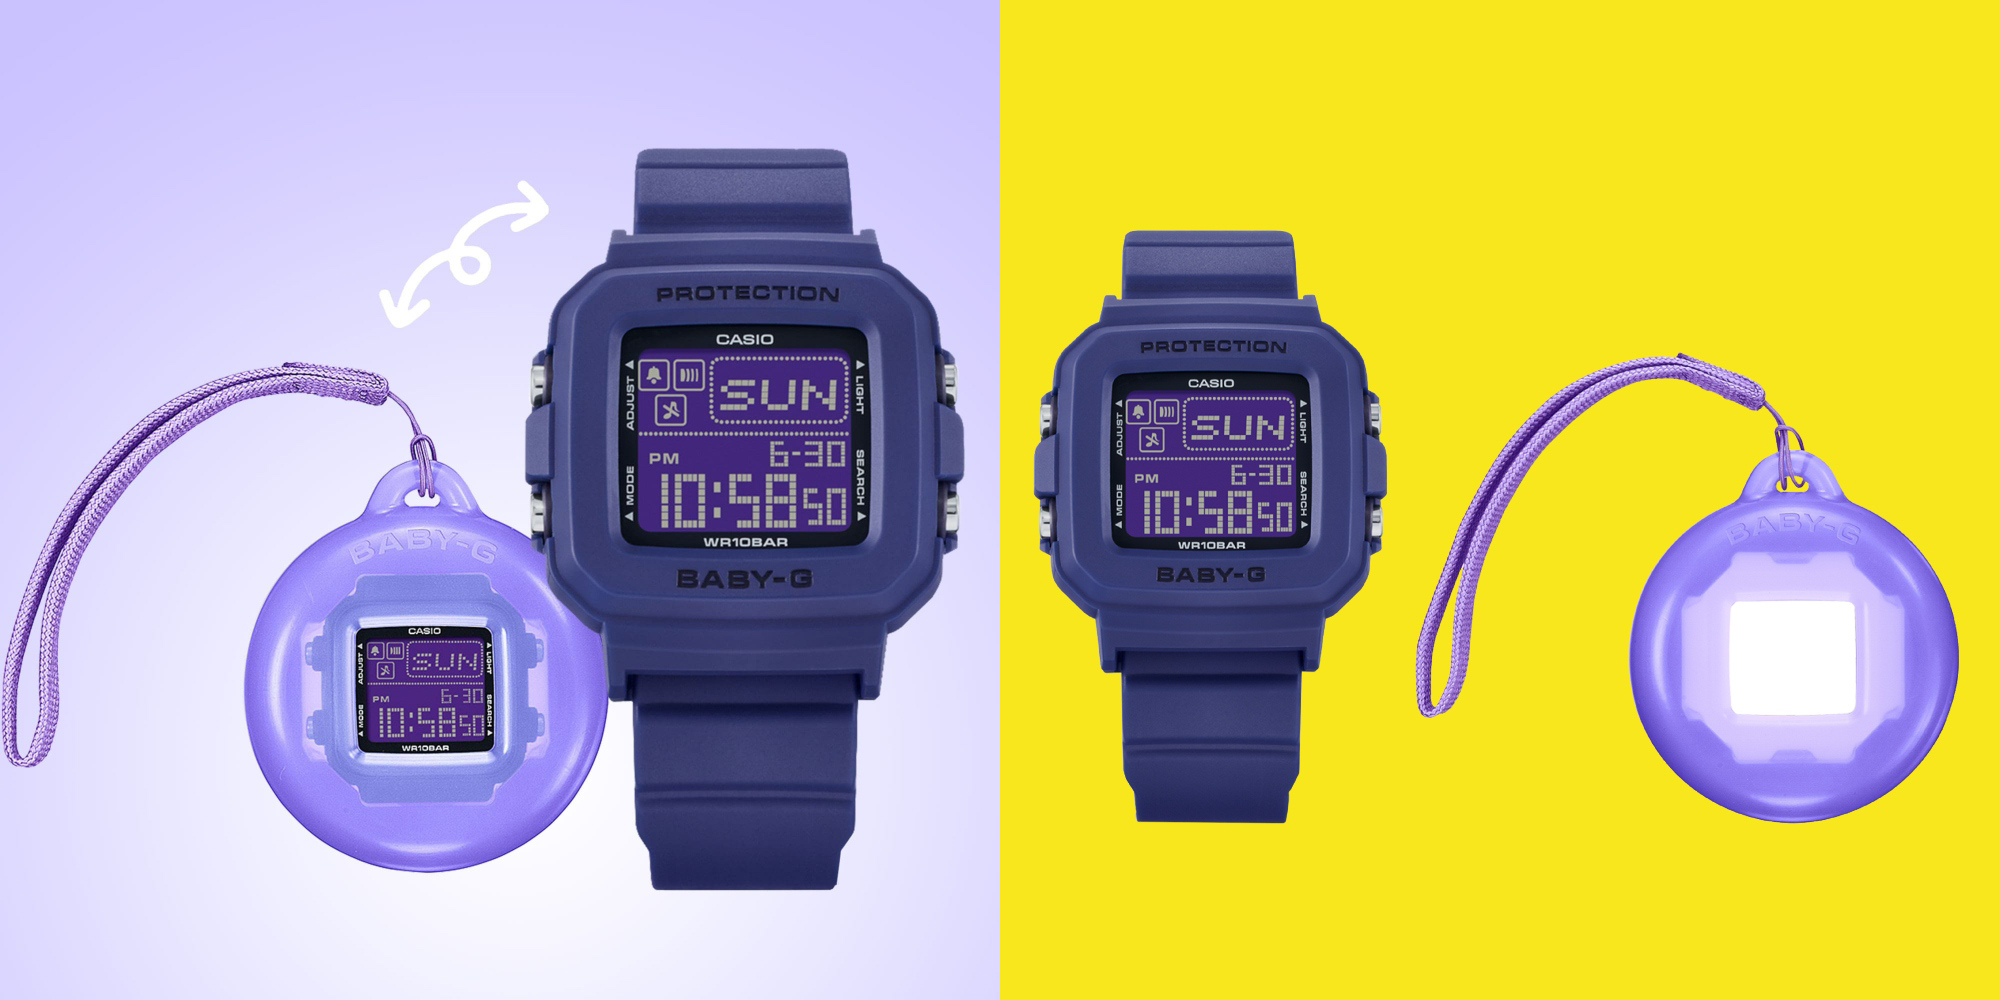 Новый выпуск ярких часов Casio Baby-G + Plus